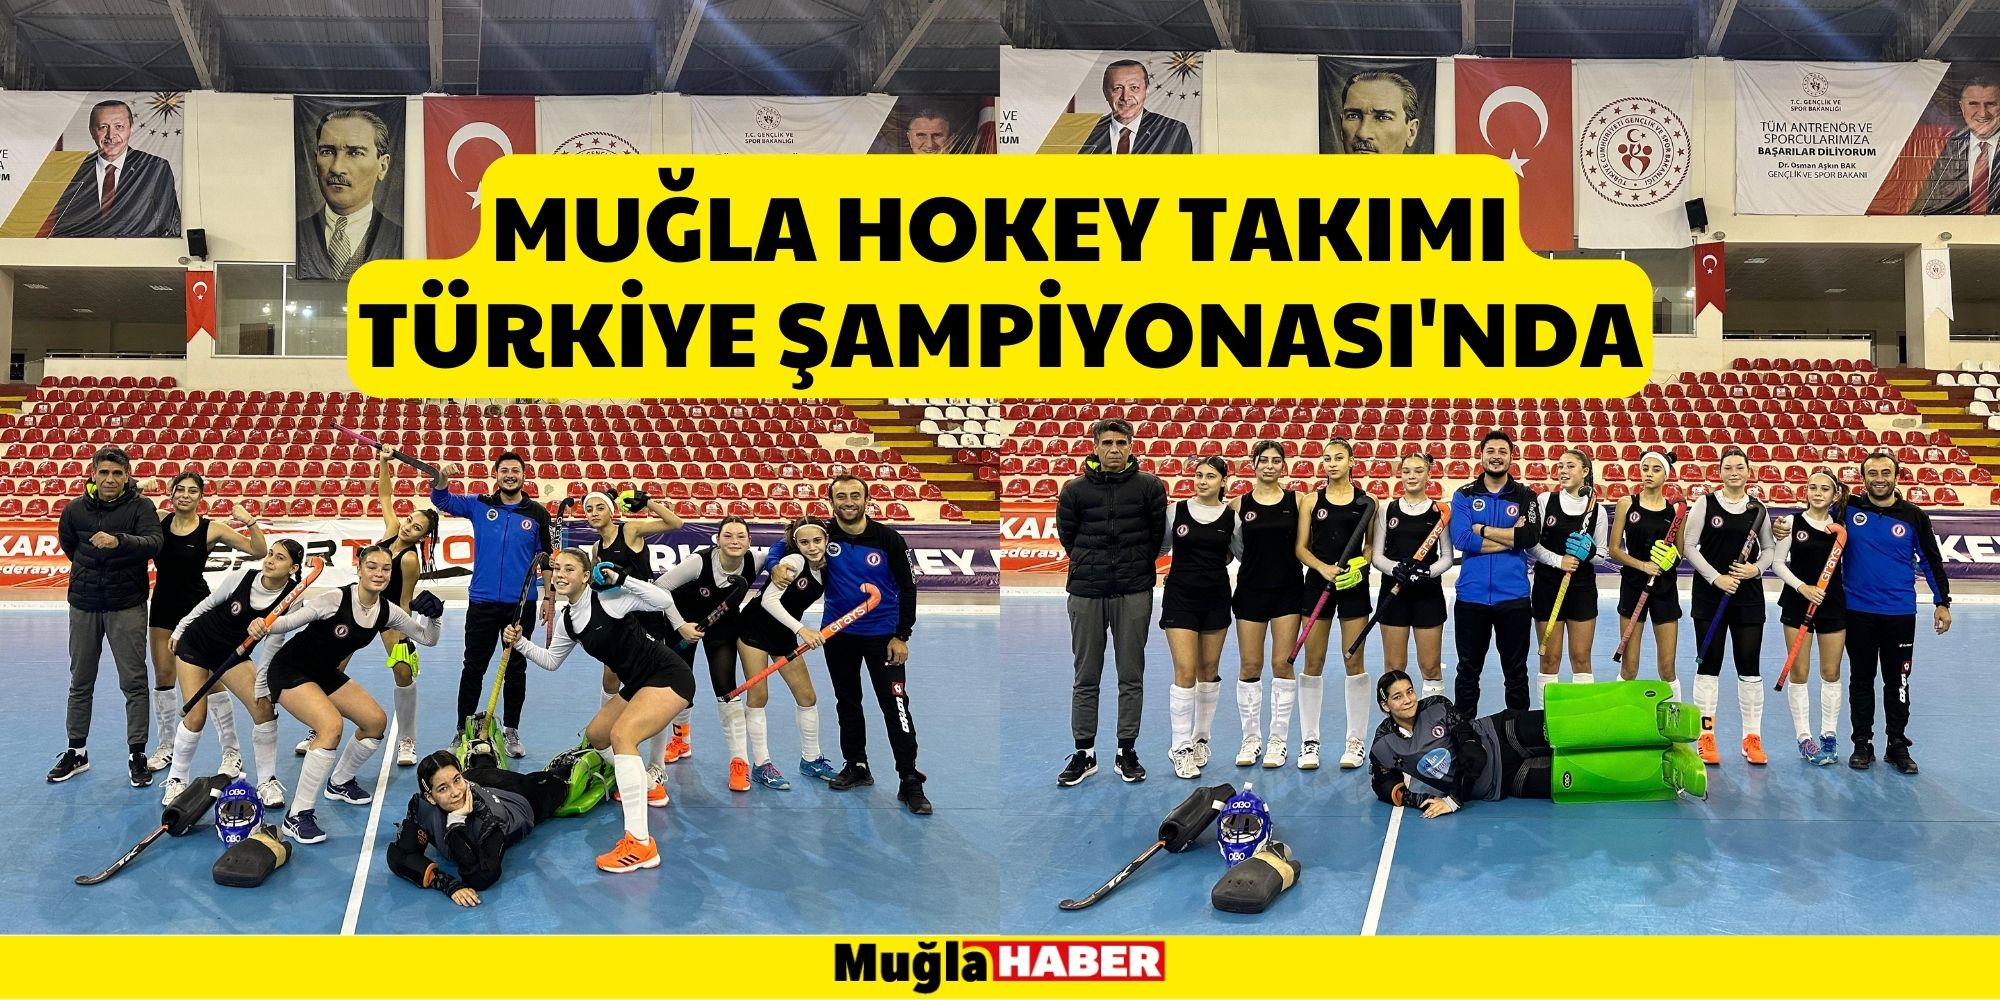 Muğla Hokey Takımı Türkiye Şampiyonası'nda